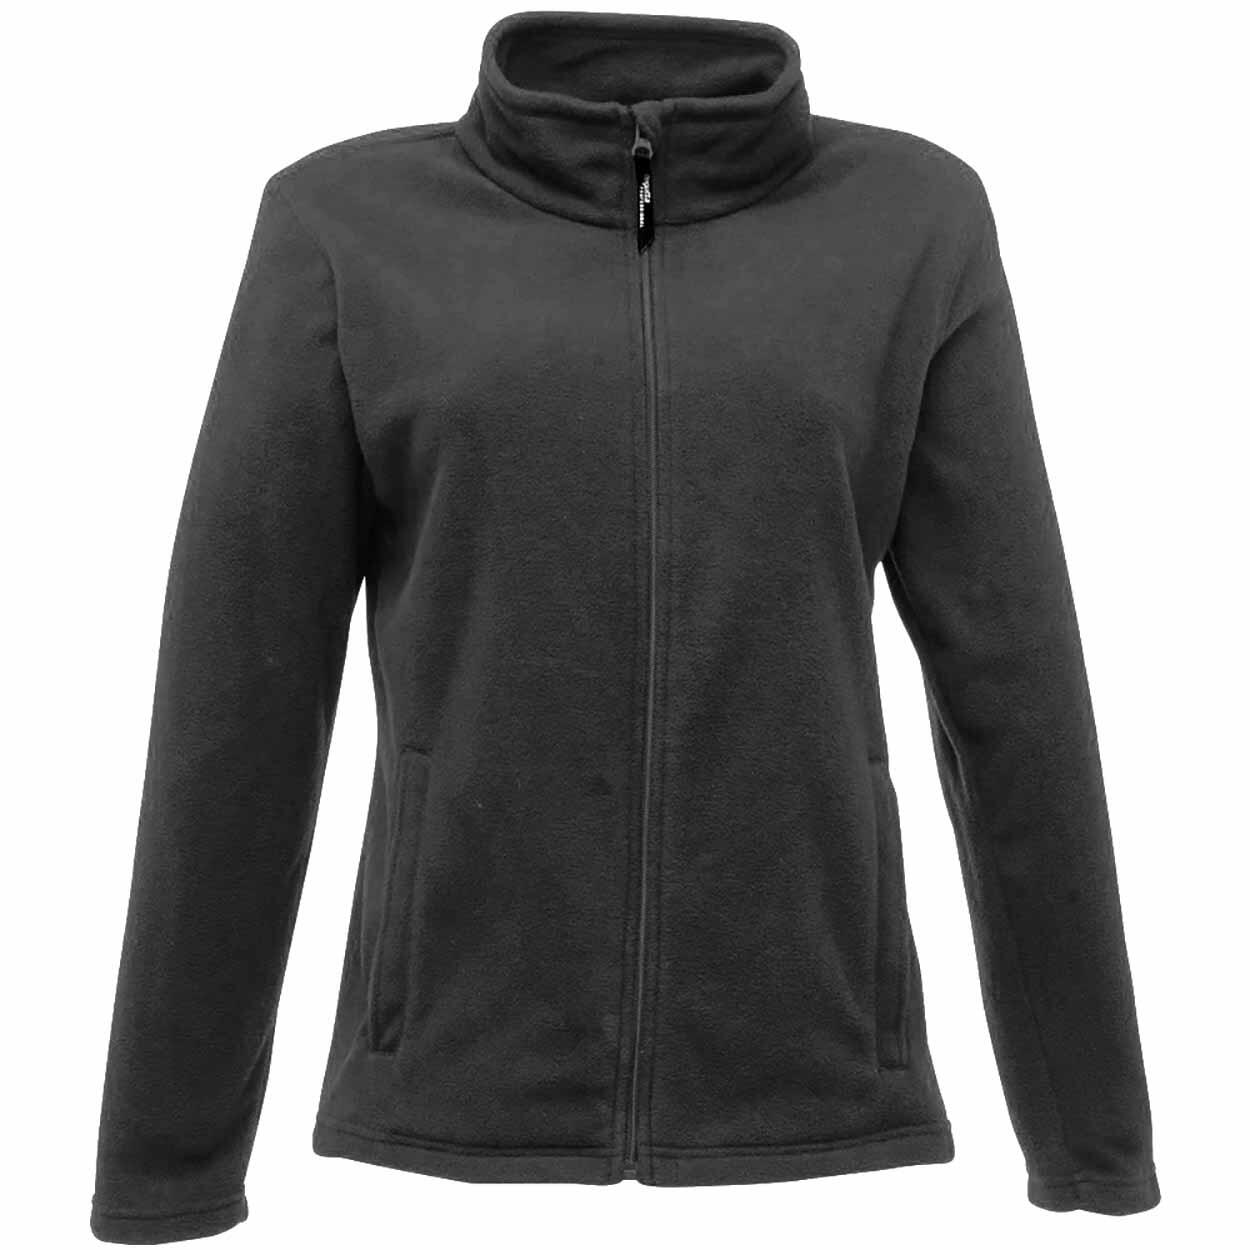 Womens/Ladies FullZip 210 Series Microfleece Jacket (Black) 1/4